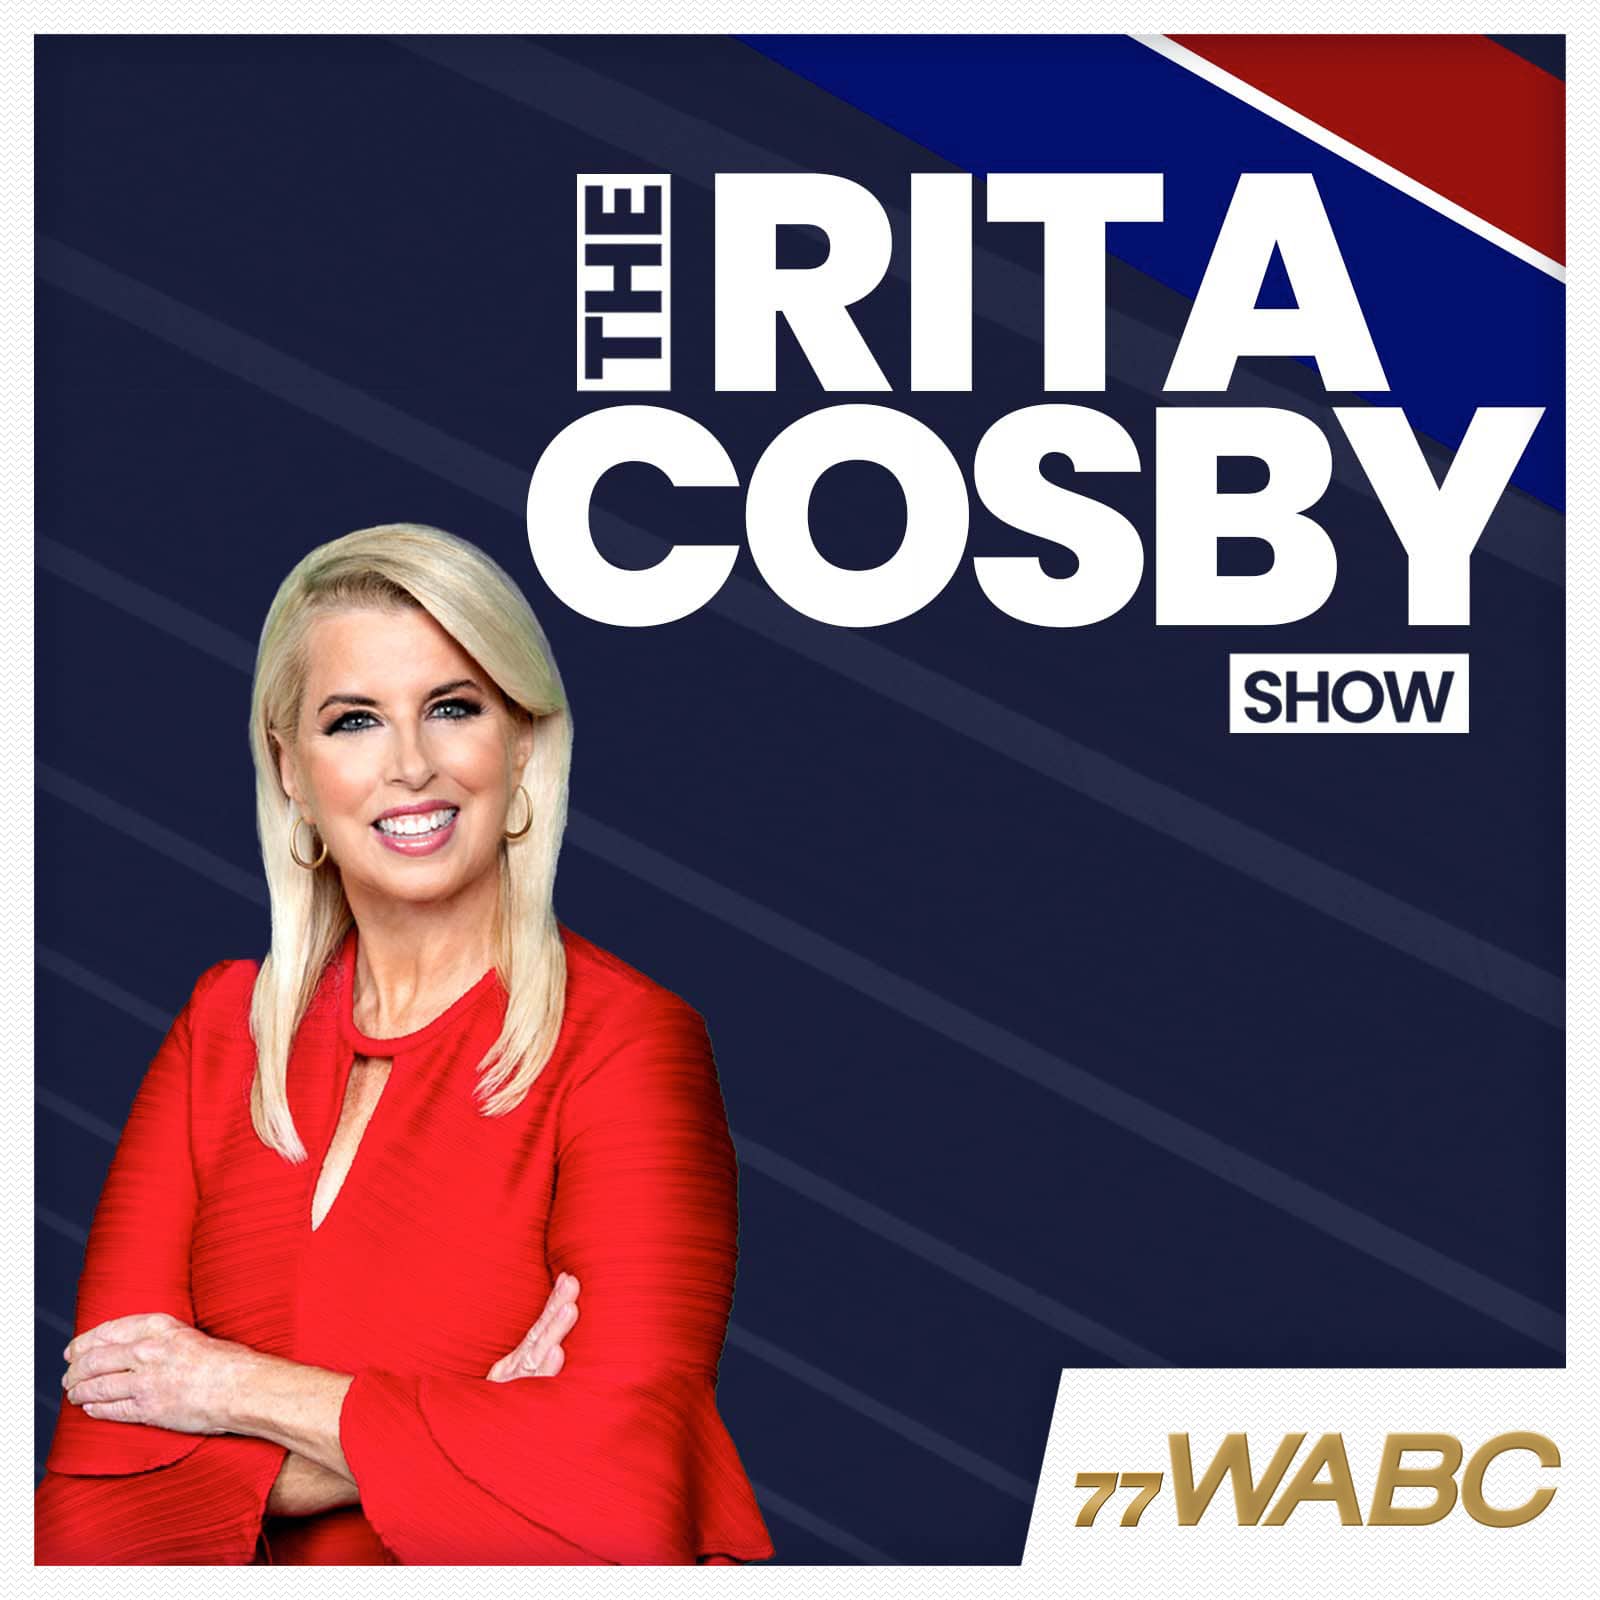 rita-cosby-podcast-new-logo-9